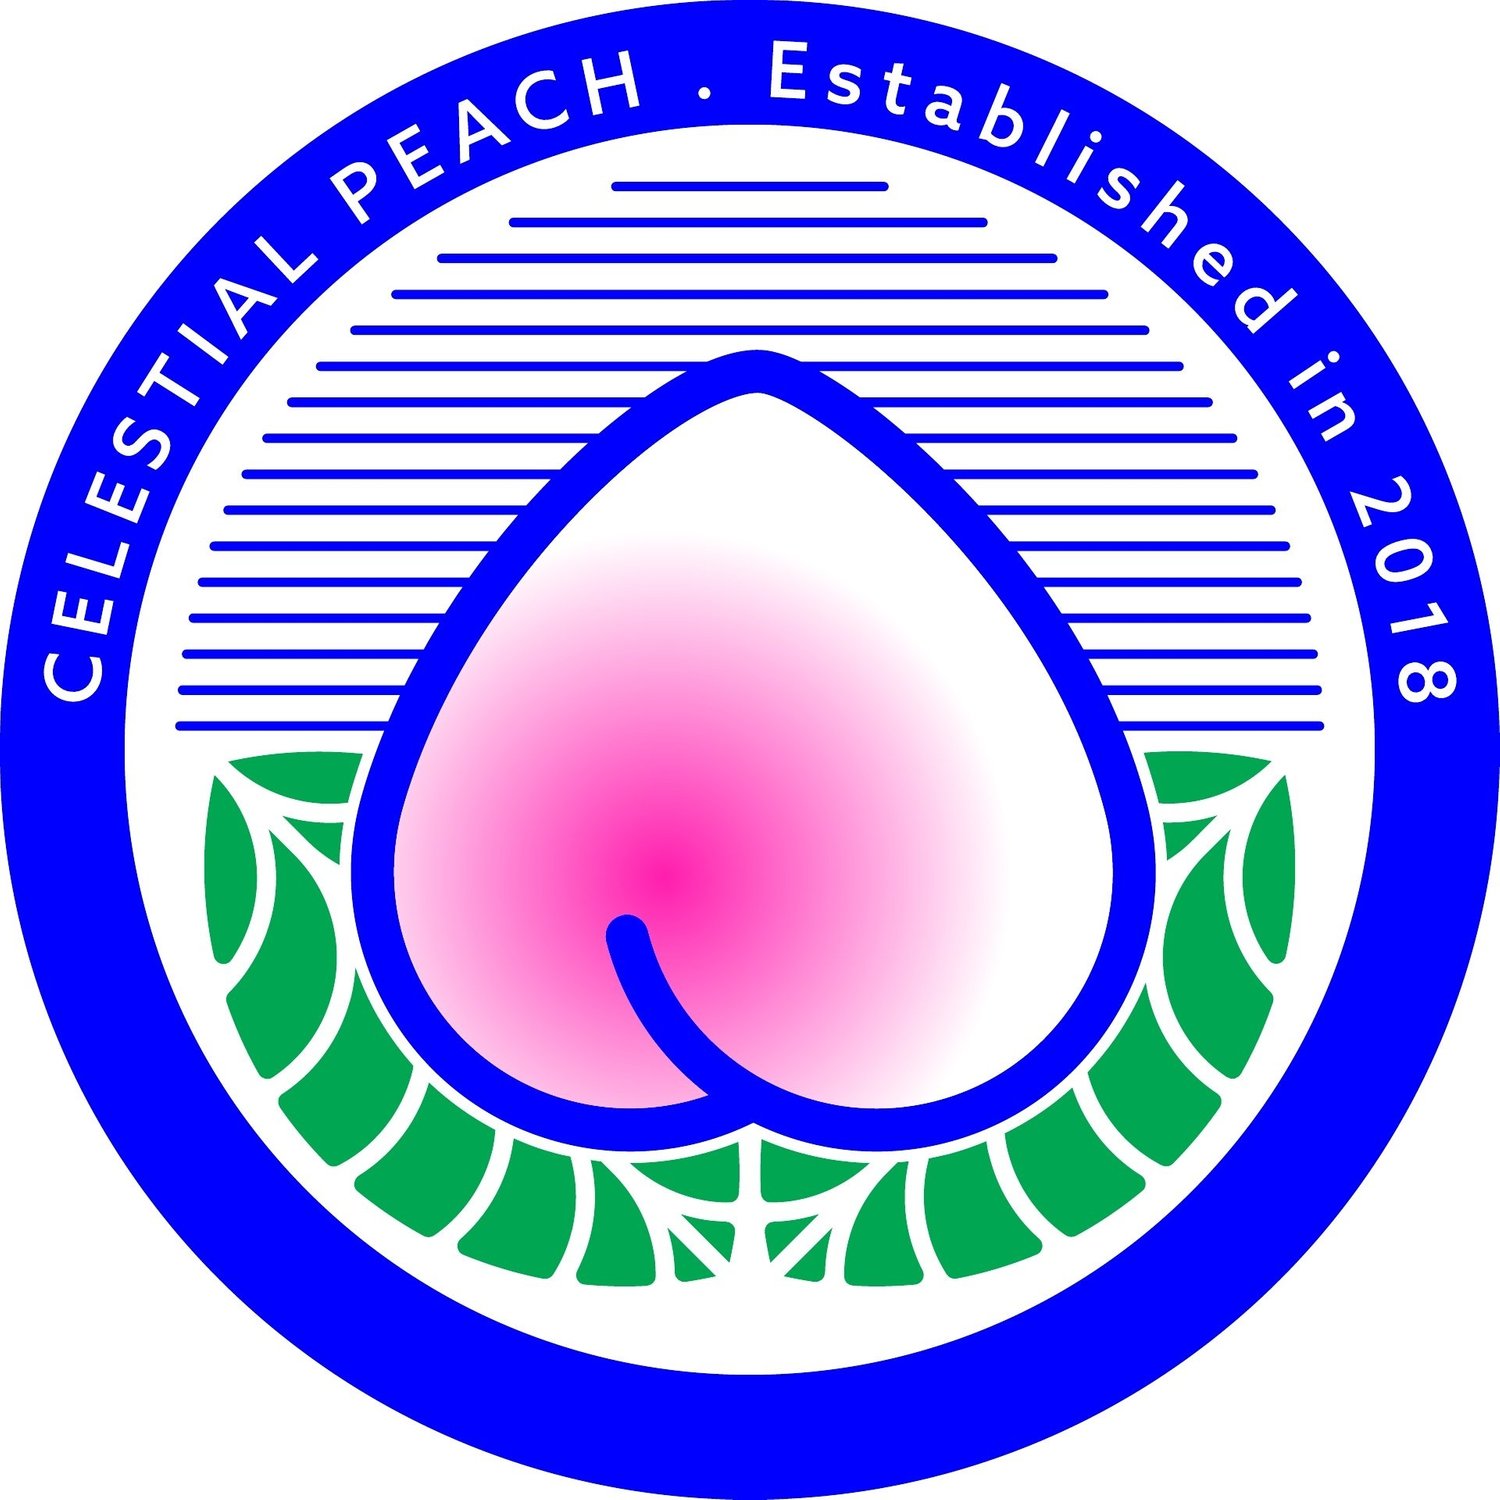 Celestial Peach